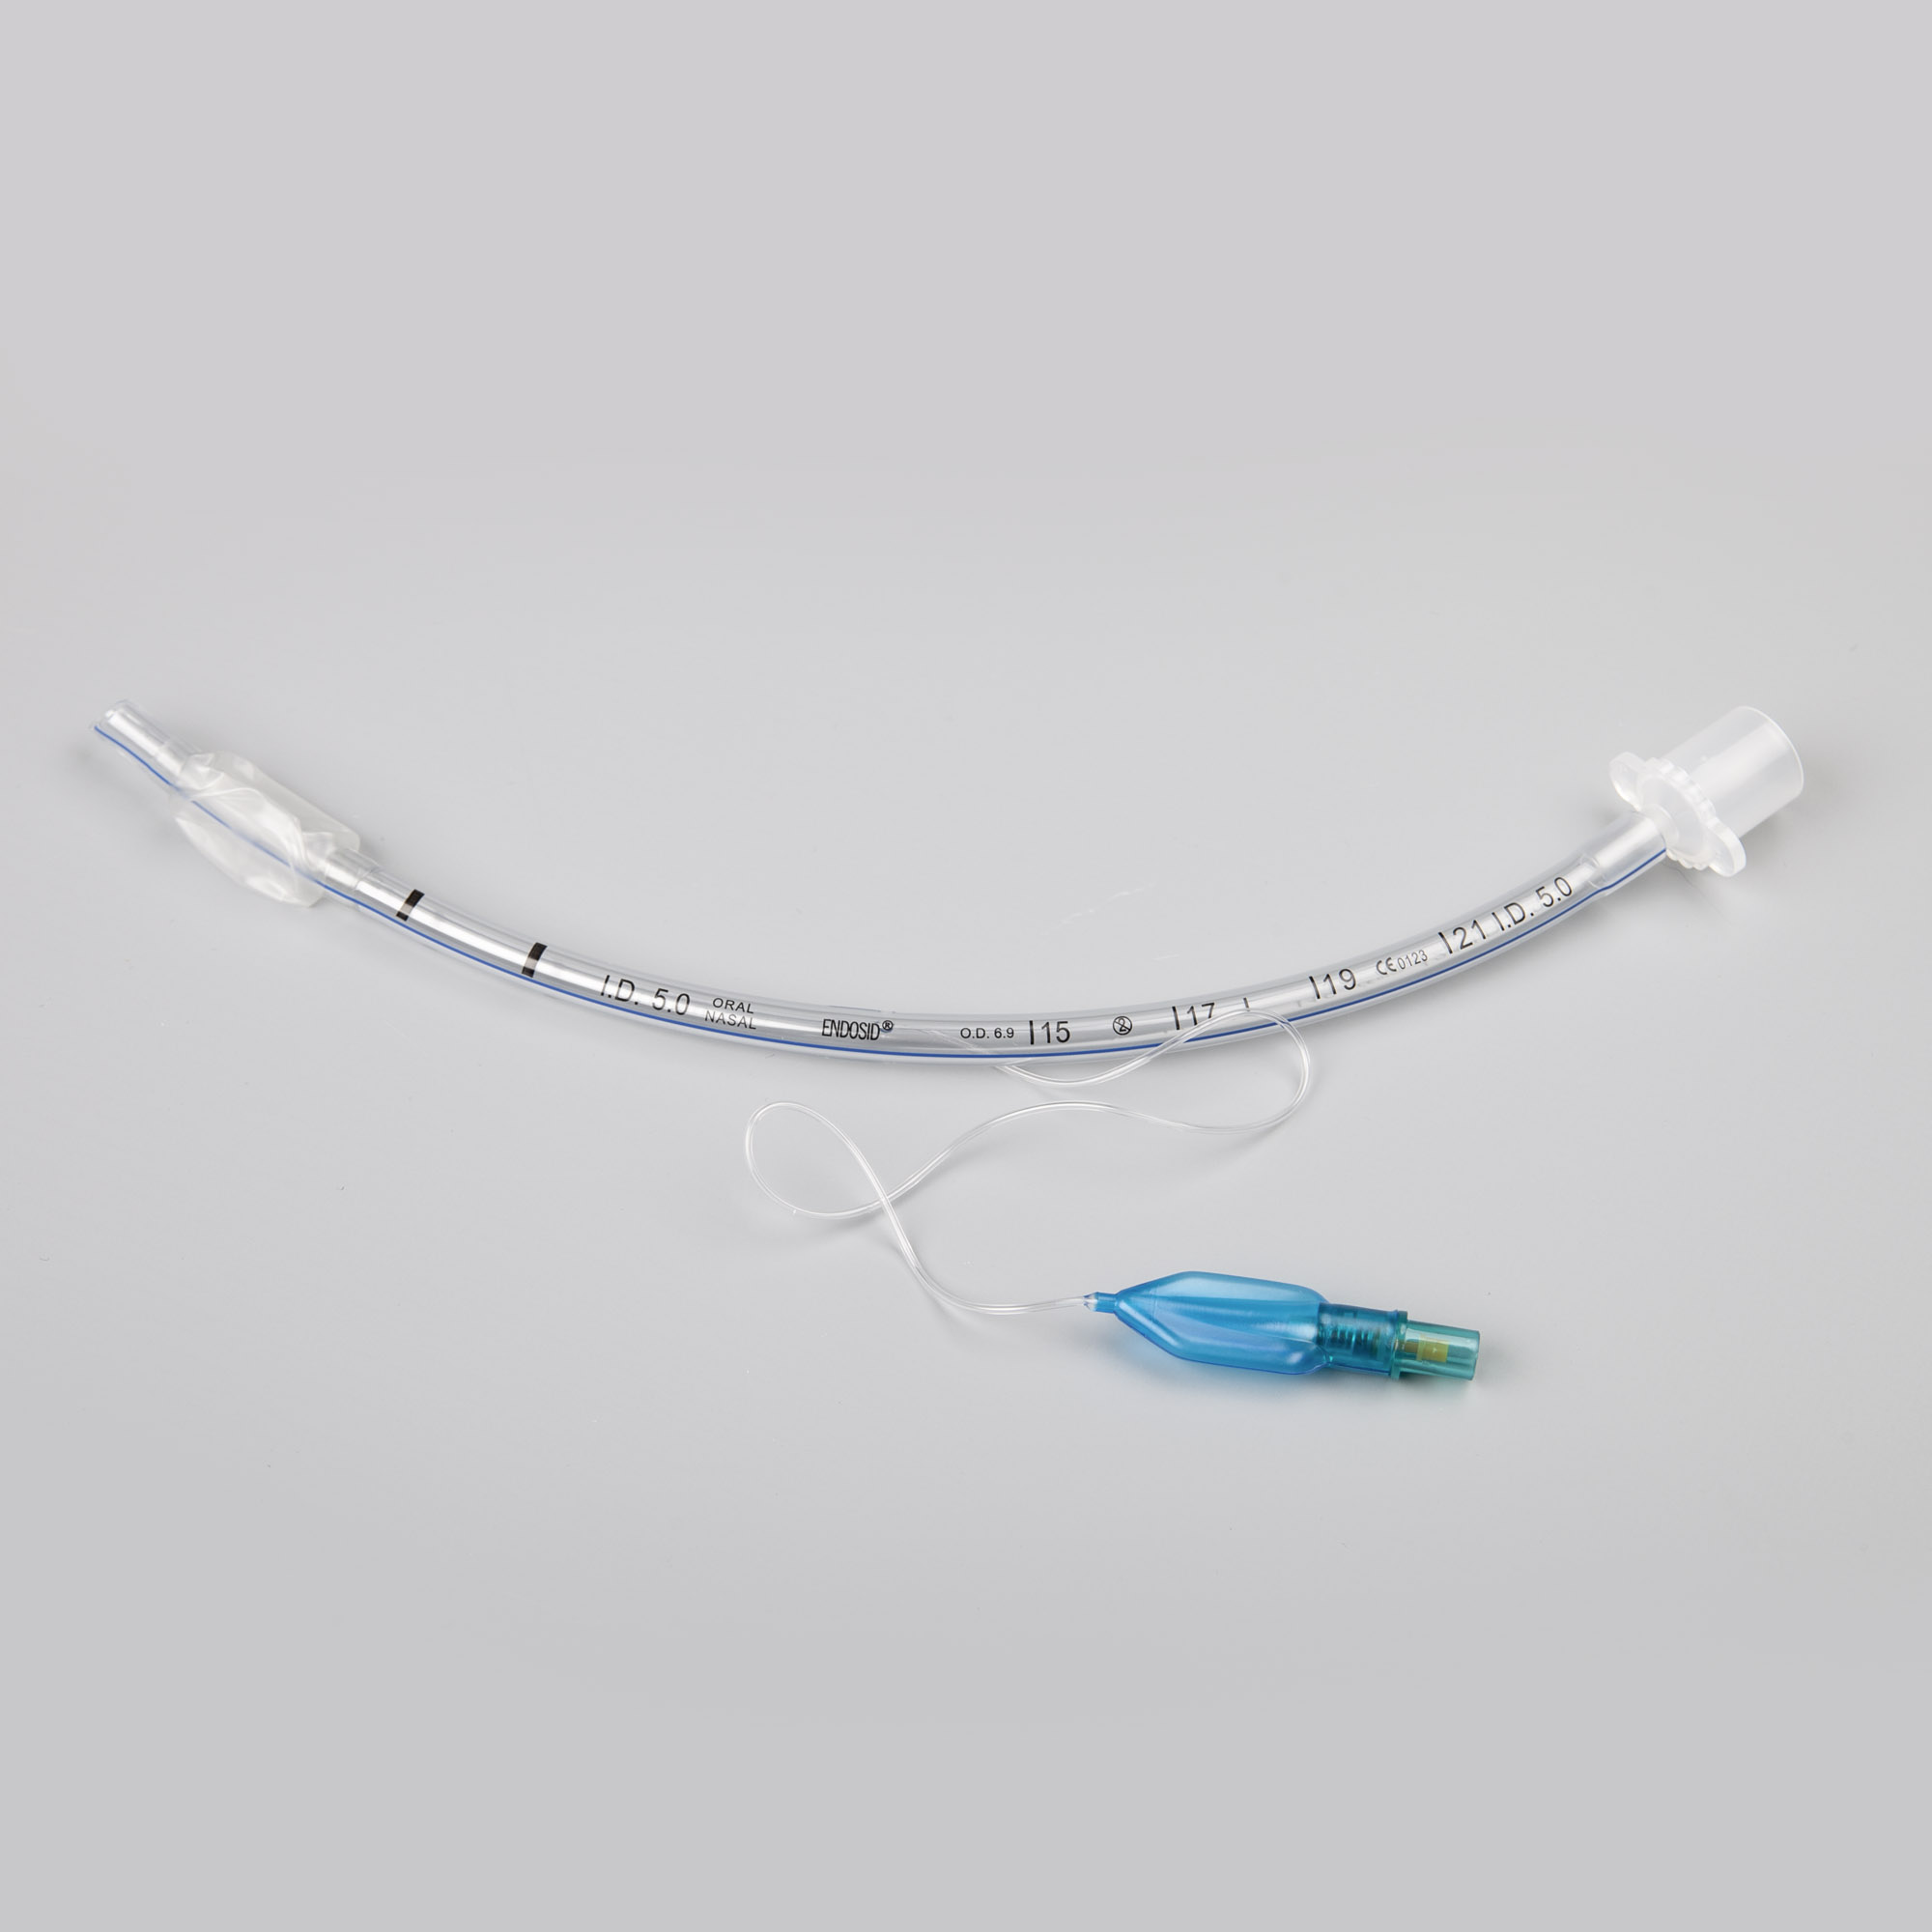 Endosid®-Tubus nasal/oral mit Cuff, Murphy-Auge und Mandrin I.D. 7,5 mm (CH 30)